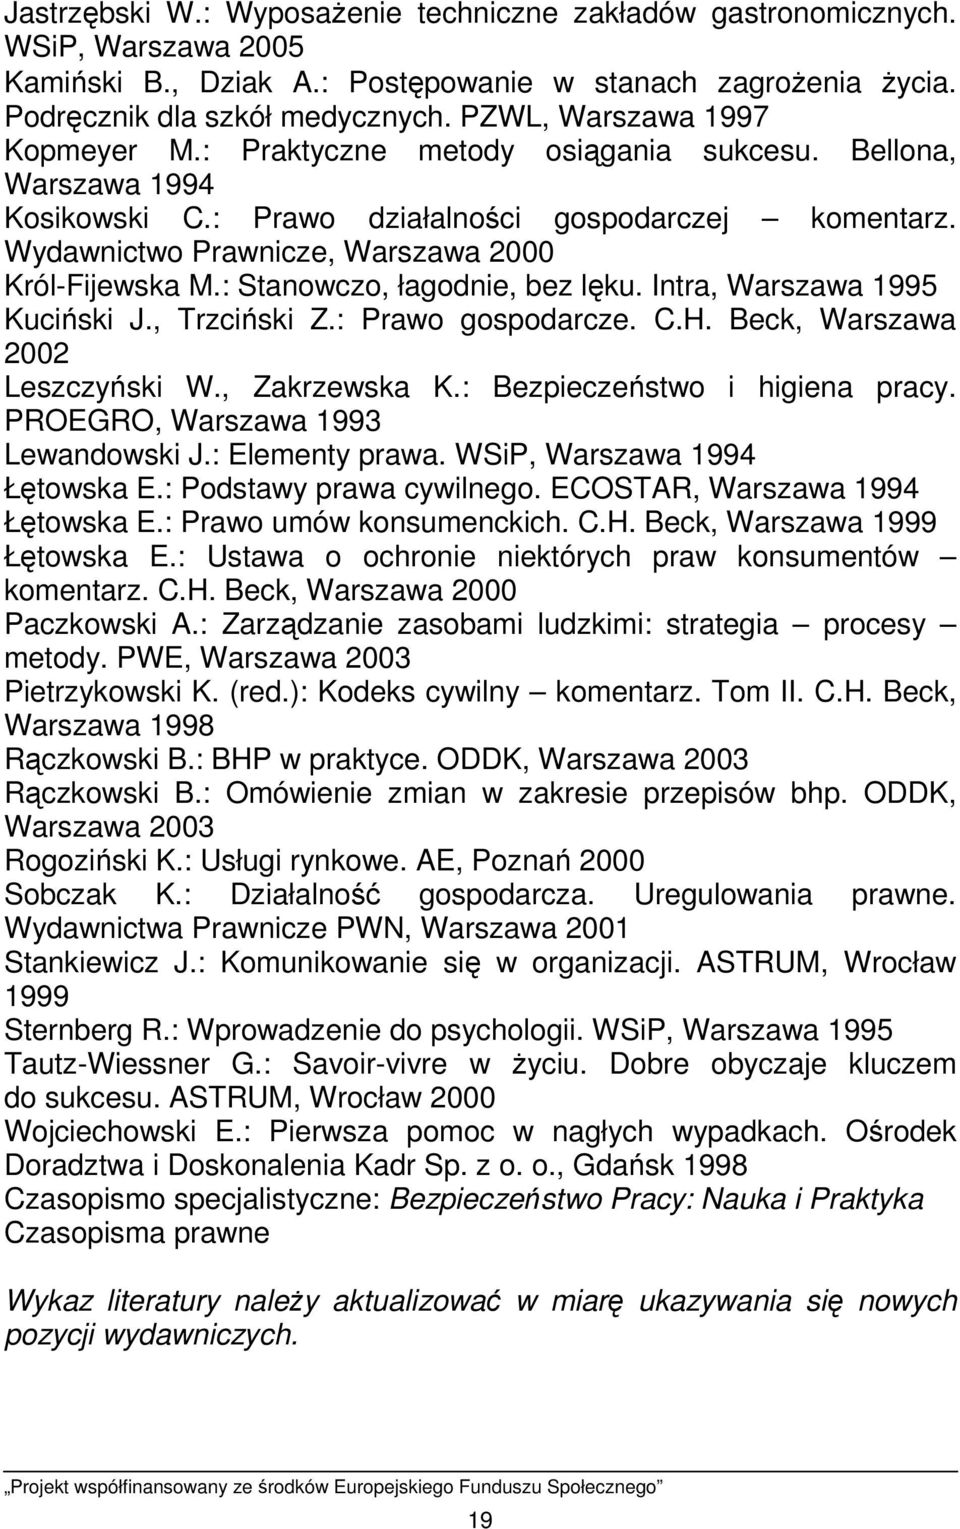 Wydawnictwo Prawnicze, Warszawa 2000 Król-Fijewska M.: Stanowczo, łagodnie, bez lęku. Intra, Warszawa 1995 Kuciński J., Trzciński Z.: Prawo gospodarcze. C.H. Beck, Warszawa 2002 Leszczyński W.